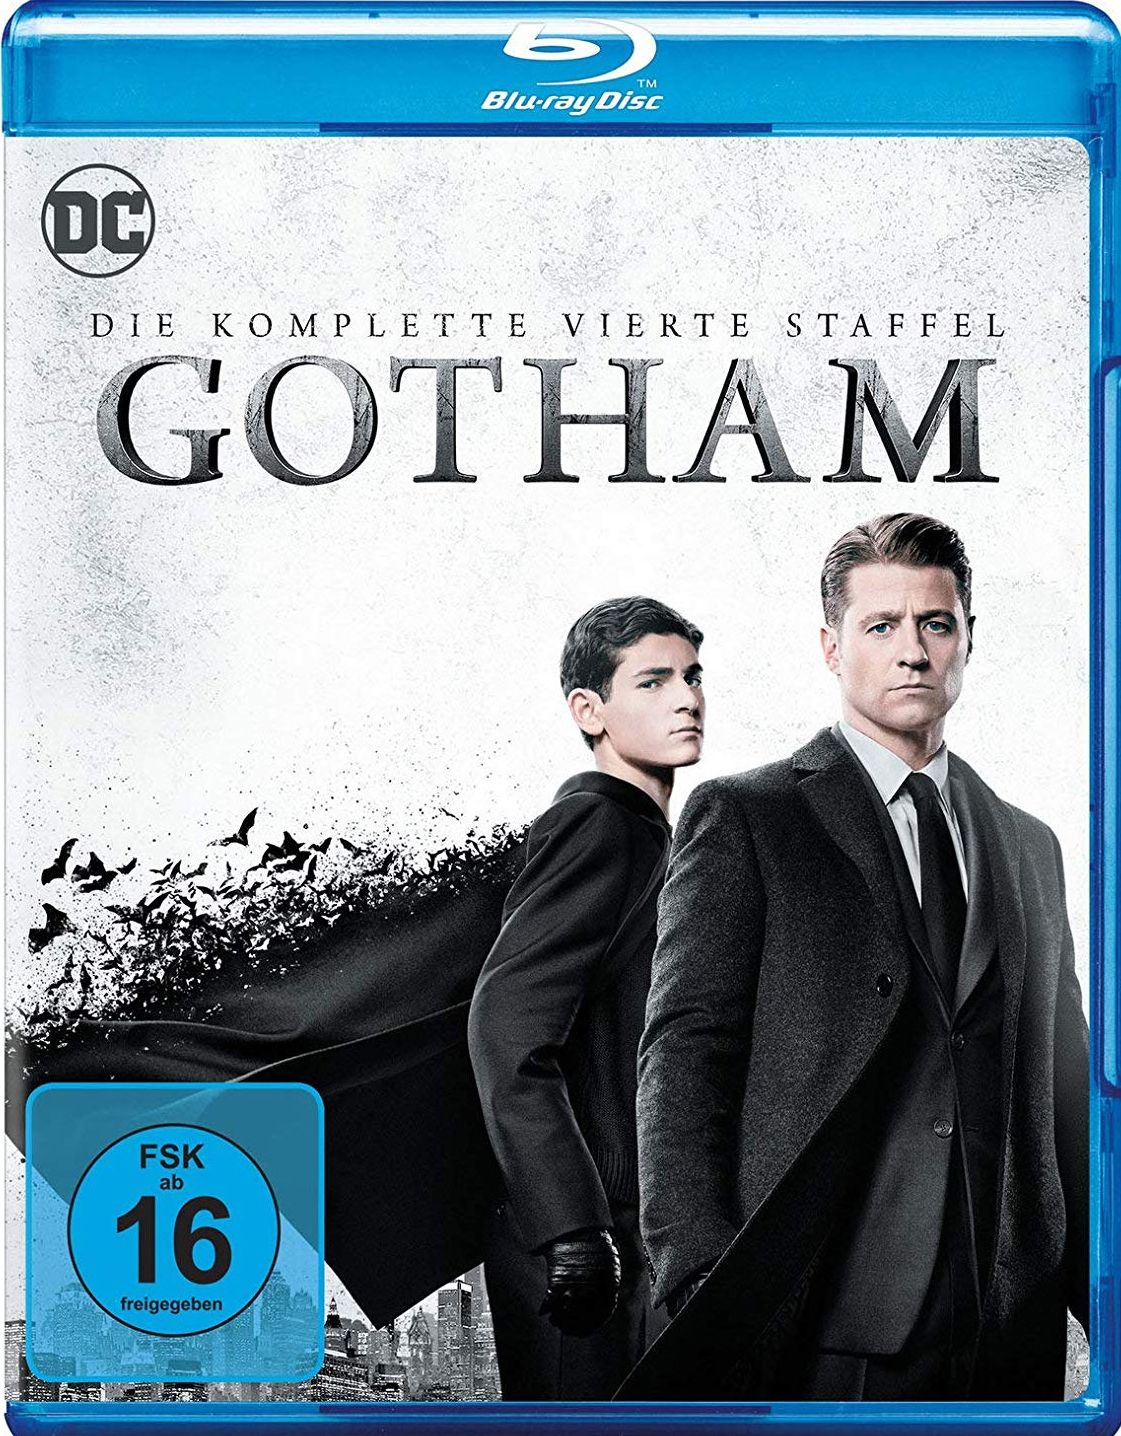 Gotham - Die komplette vierte Staffel (4 Discs) (BLURAY)